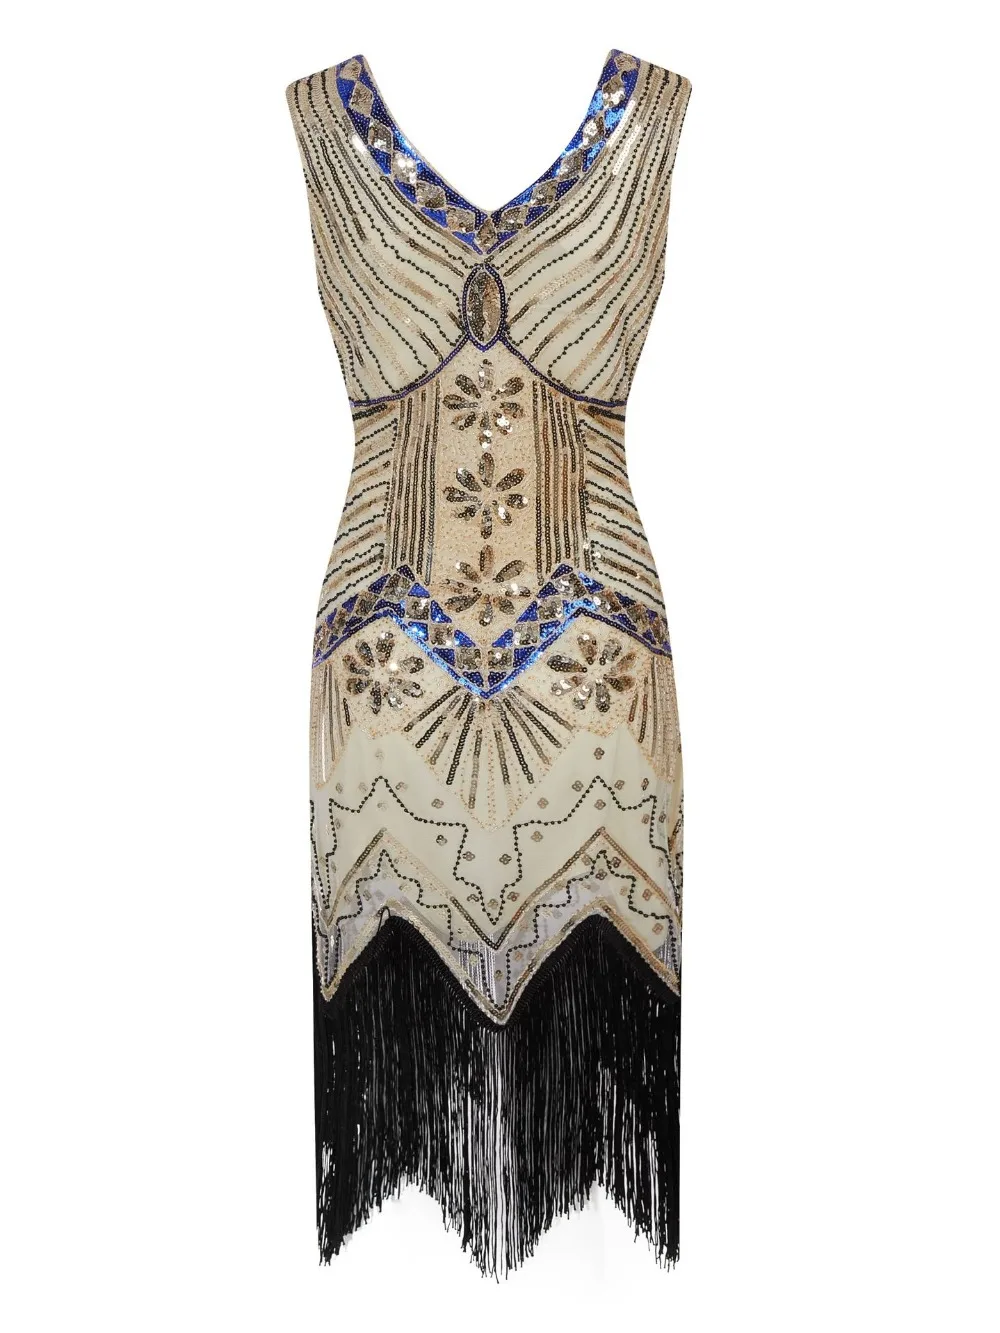 Женское платье для вечеринки, Robe Femme 1920s Great Gatsby, платье миди с блестками и бахромой, летнее платье, Ретро стиль, женское вечернее платье